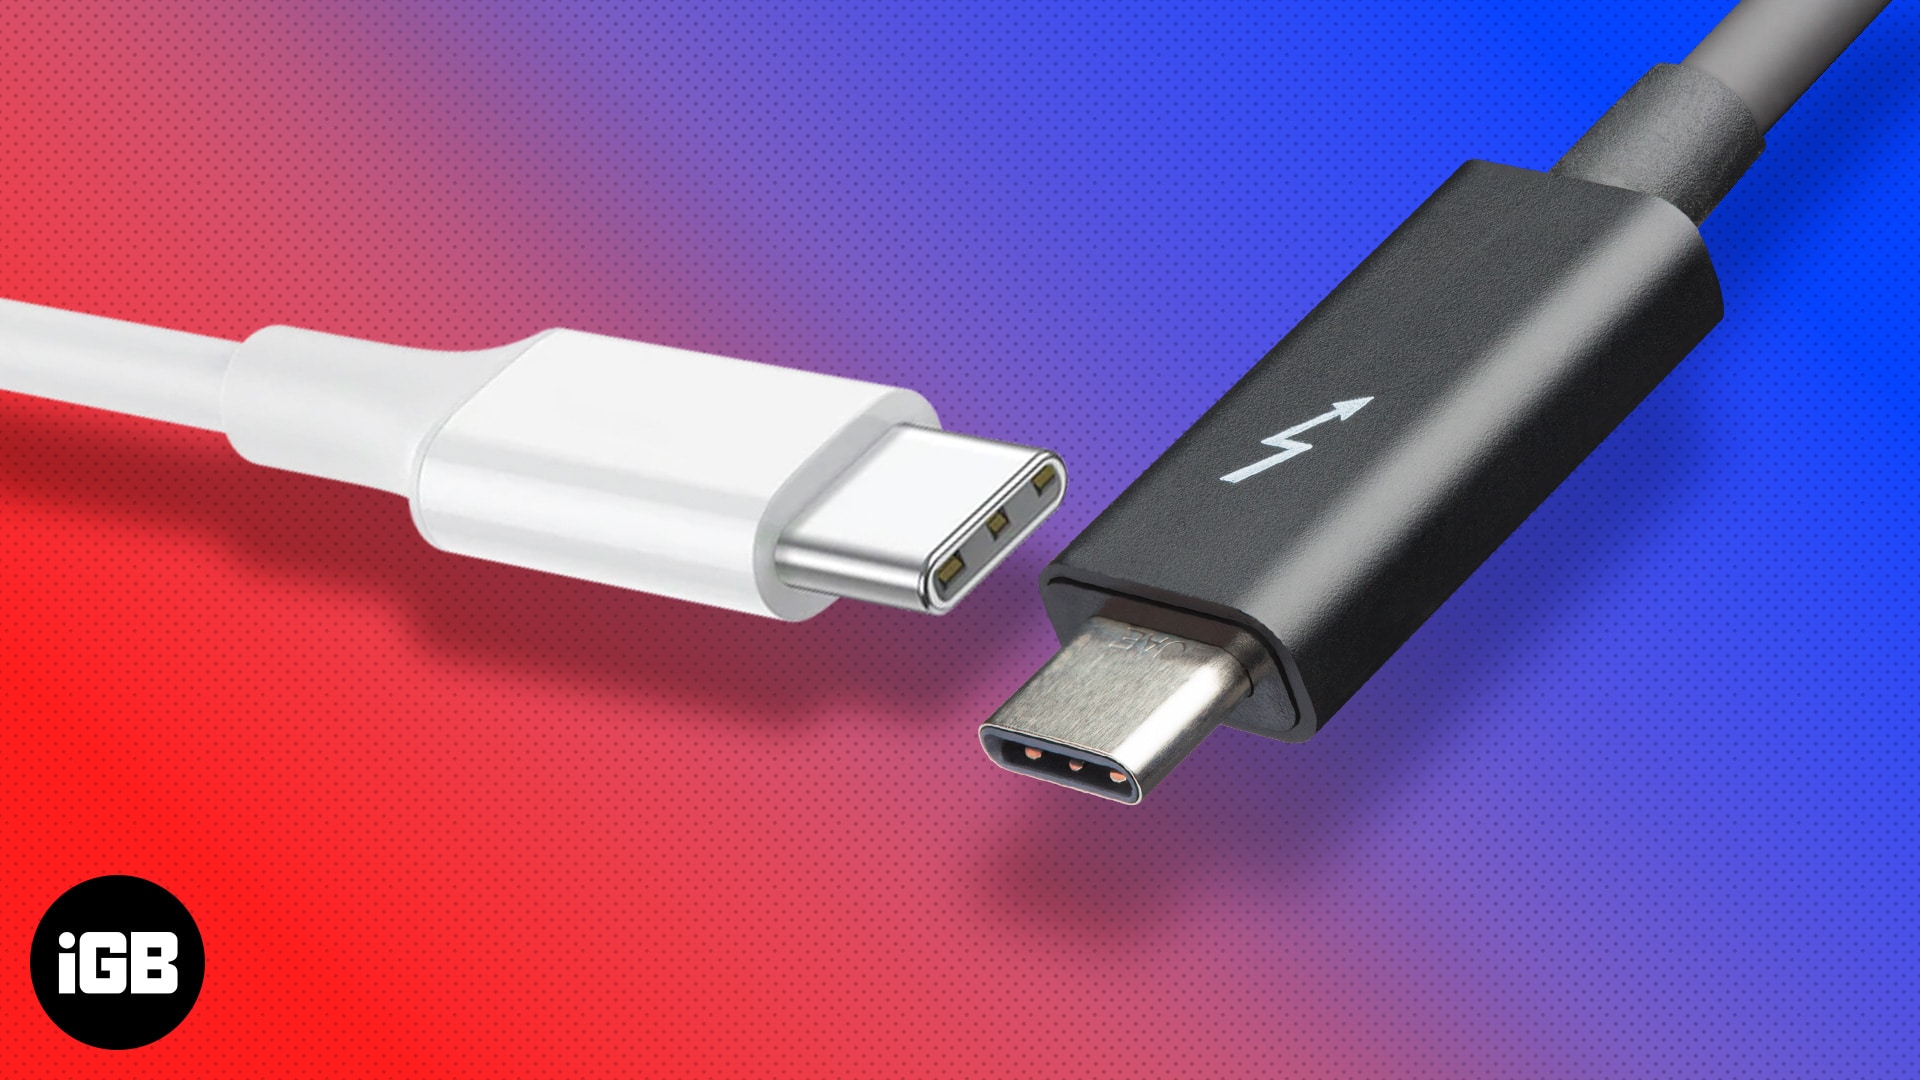 midt i intetsteds ingeniørarbejde at klemme Thunderbolt vs. USB-C: What's the difference? - iGeeksBlog